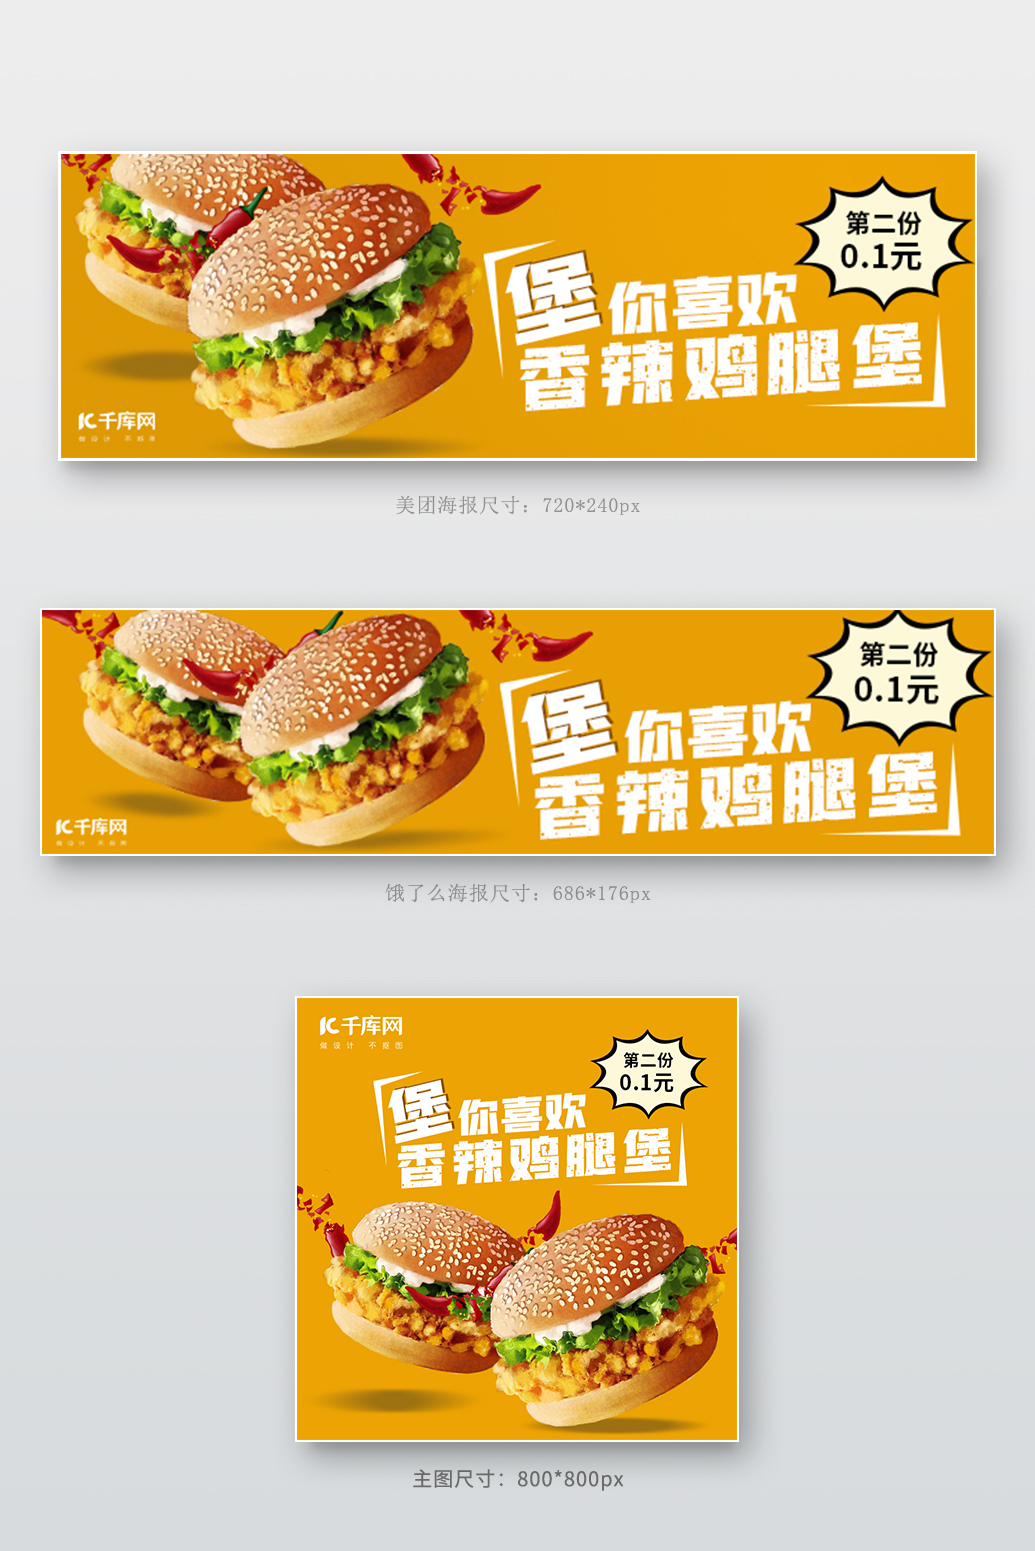 汉堡美团饿了么外卖香辣鸡腿堡黄色简约电商外卖店招海报banner图片